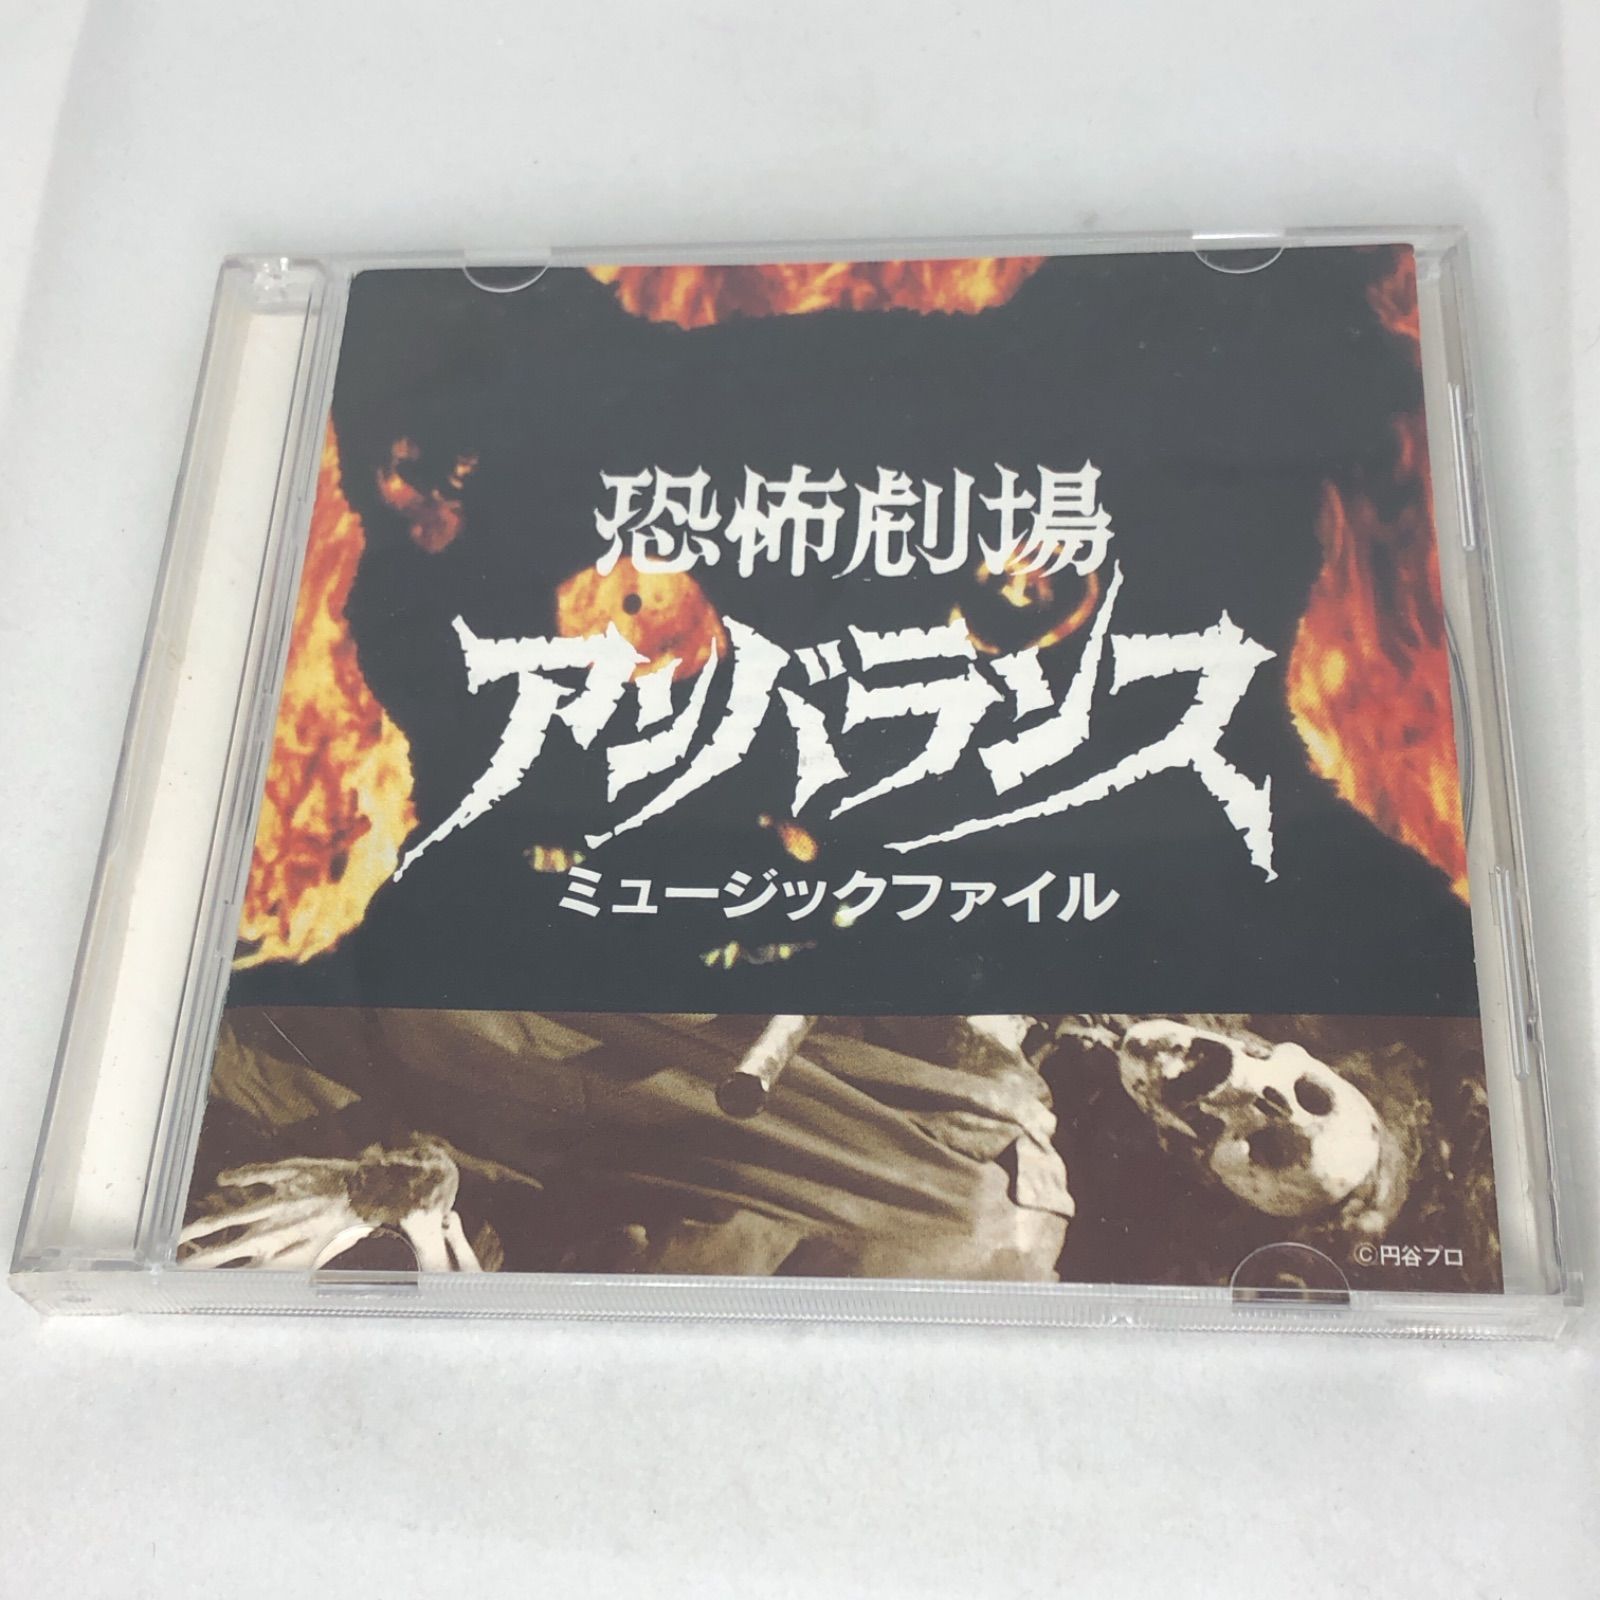 恐怖劇場アンバランス ミュージックファイル 中古CD VPCD81120